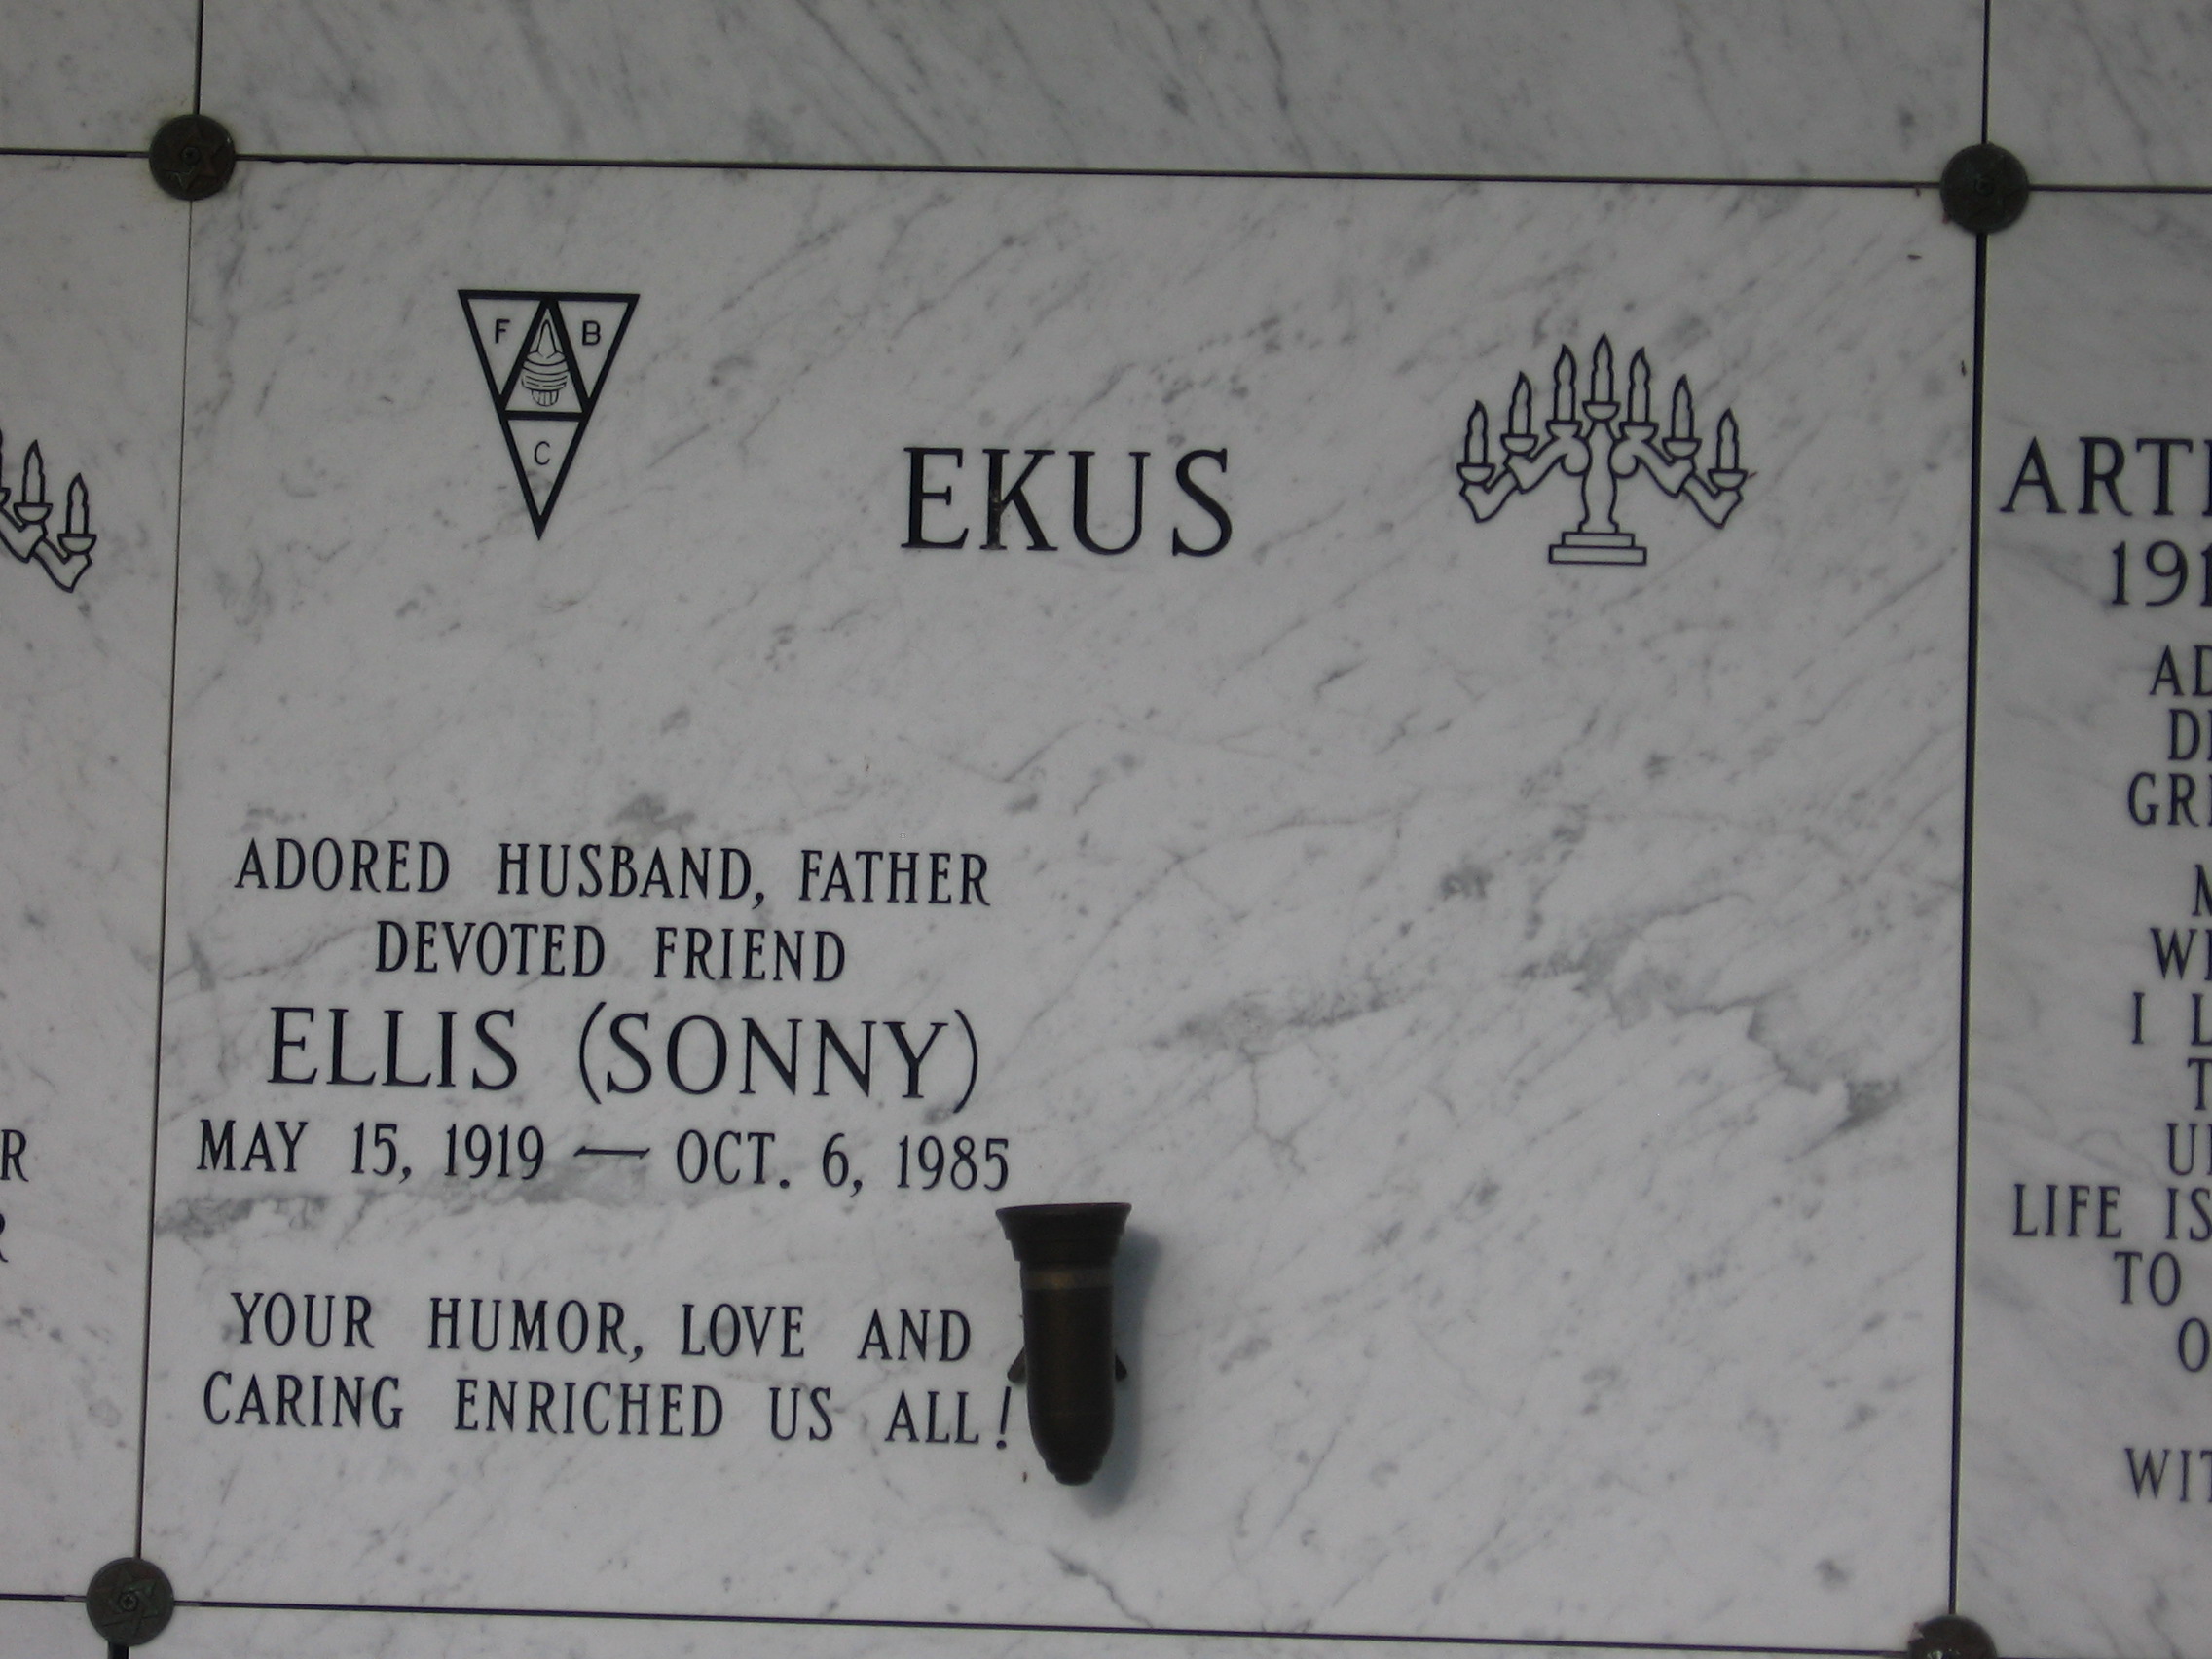 Ellis "Sonny" Ekus